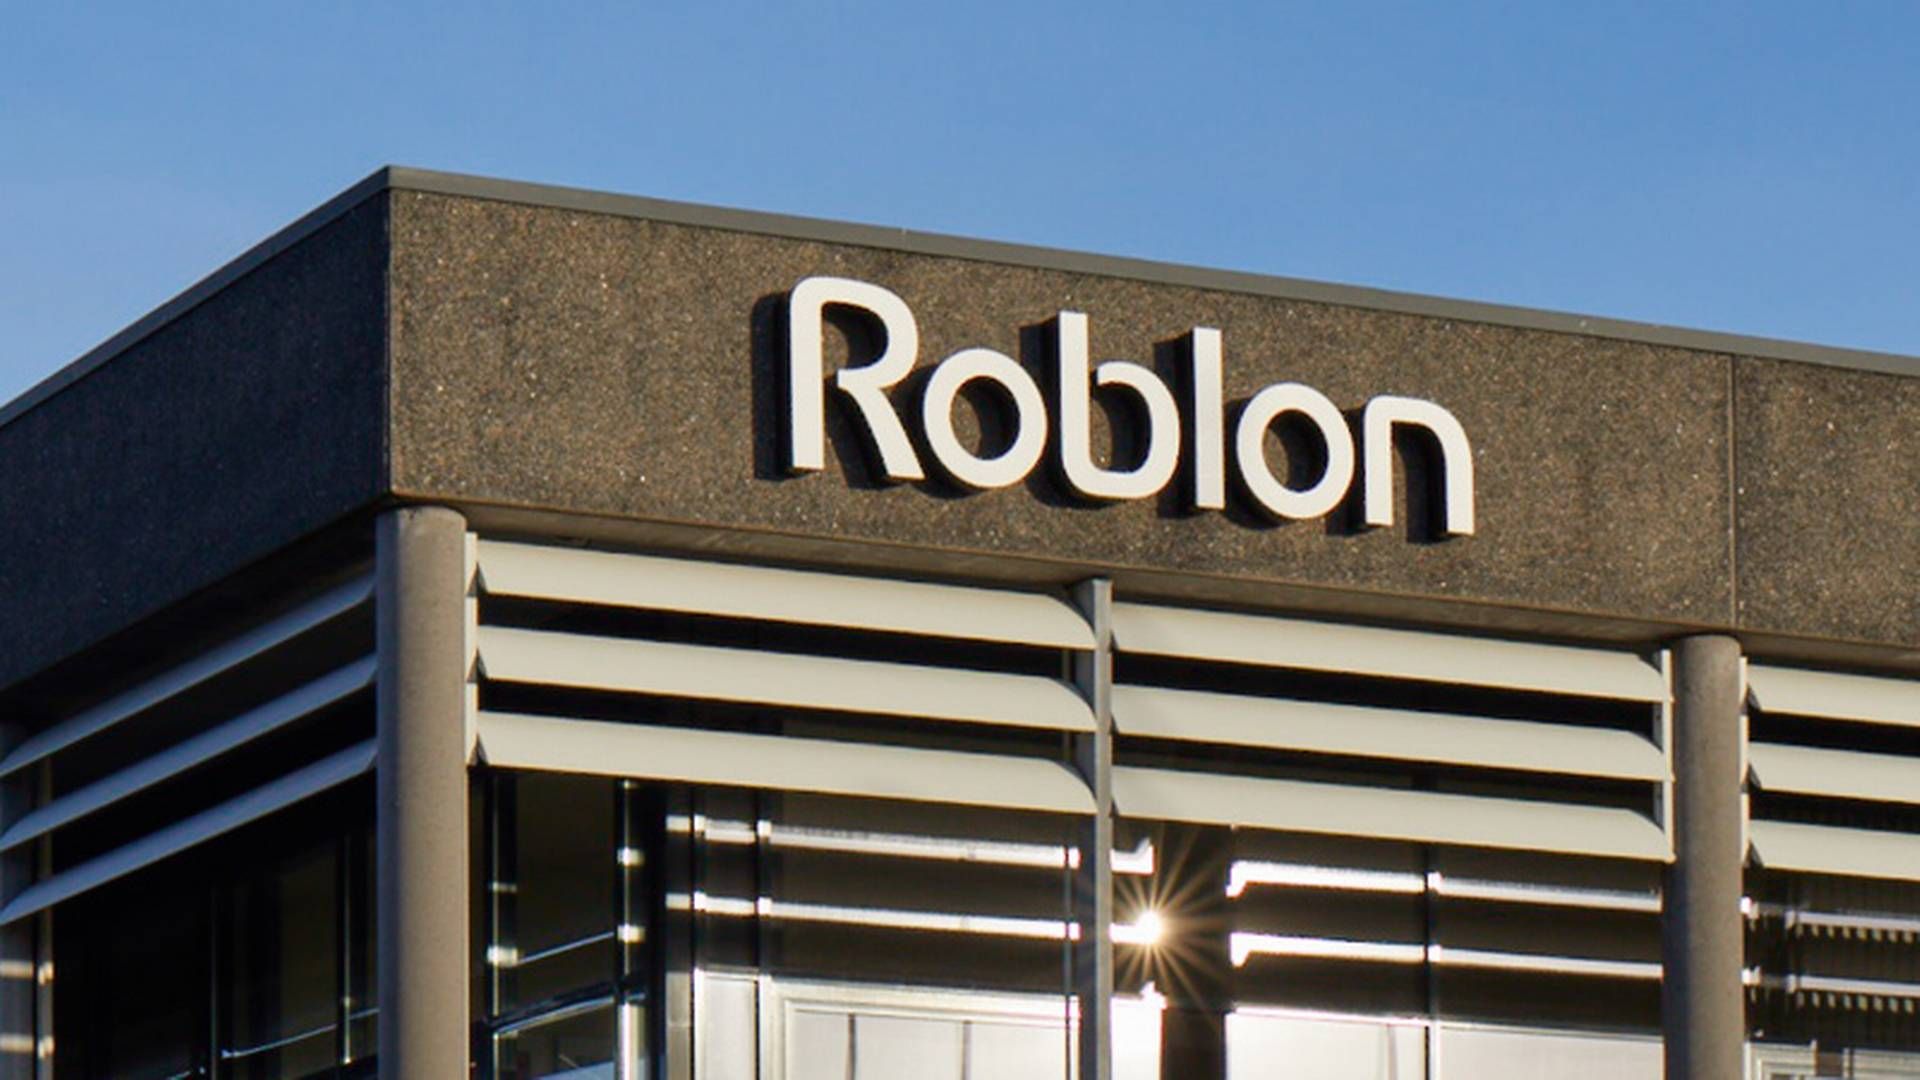 Roblon, der bl.a. producerer fibre til industrielle formål som skibsliner, har hjemme i Frederikshavn. | Foto: PR / Roblon